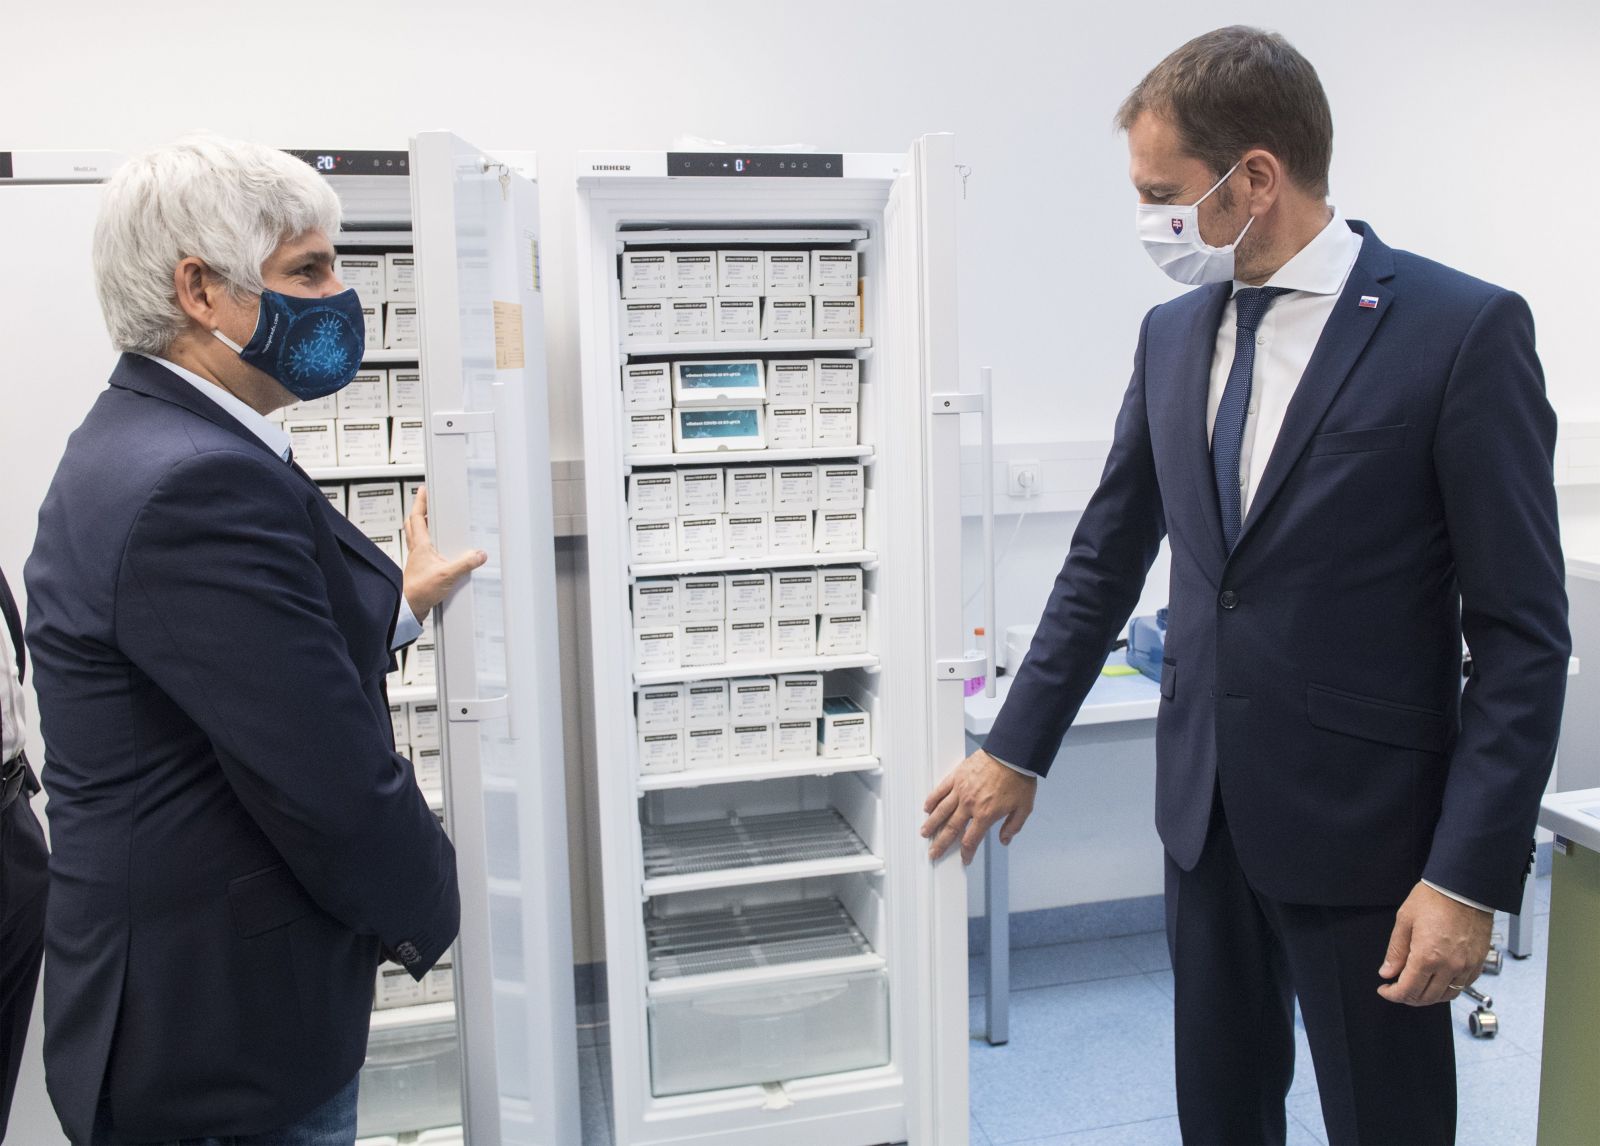 Slovenskí vedci darovali 100.000 kusov PCR testov na ochorenie COVID-19 vo vedeckom parku Univerzity Komenského v Bratislave 9. októbra 2020. Na snímke vpravo premiér SR Igor Matovič a vľavo biochemik Pavol Čekan.